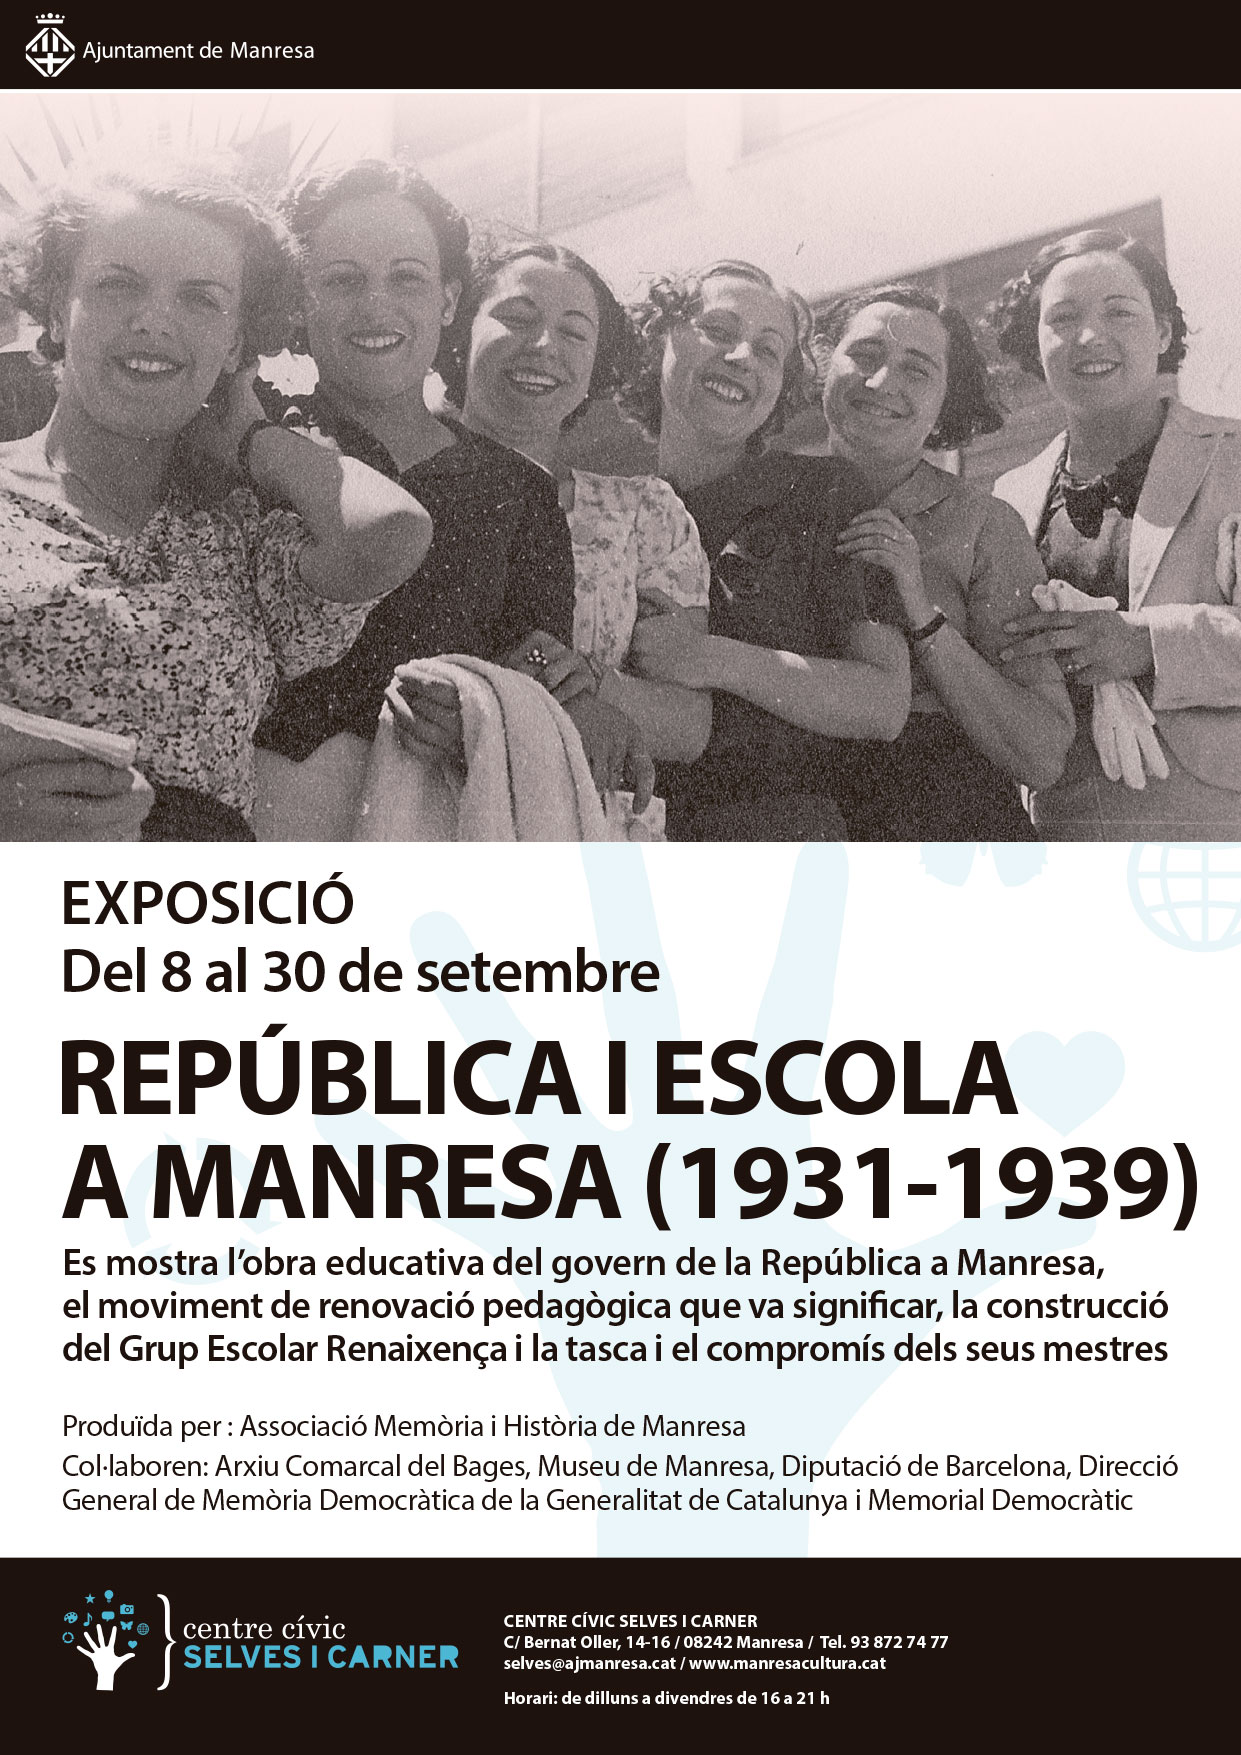 REPÚBLICA I ESCOLA A MANRESA (1931 - 1939)